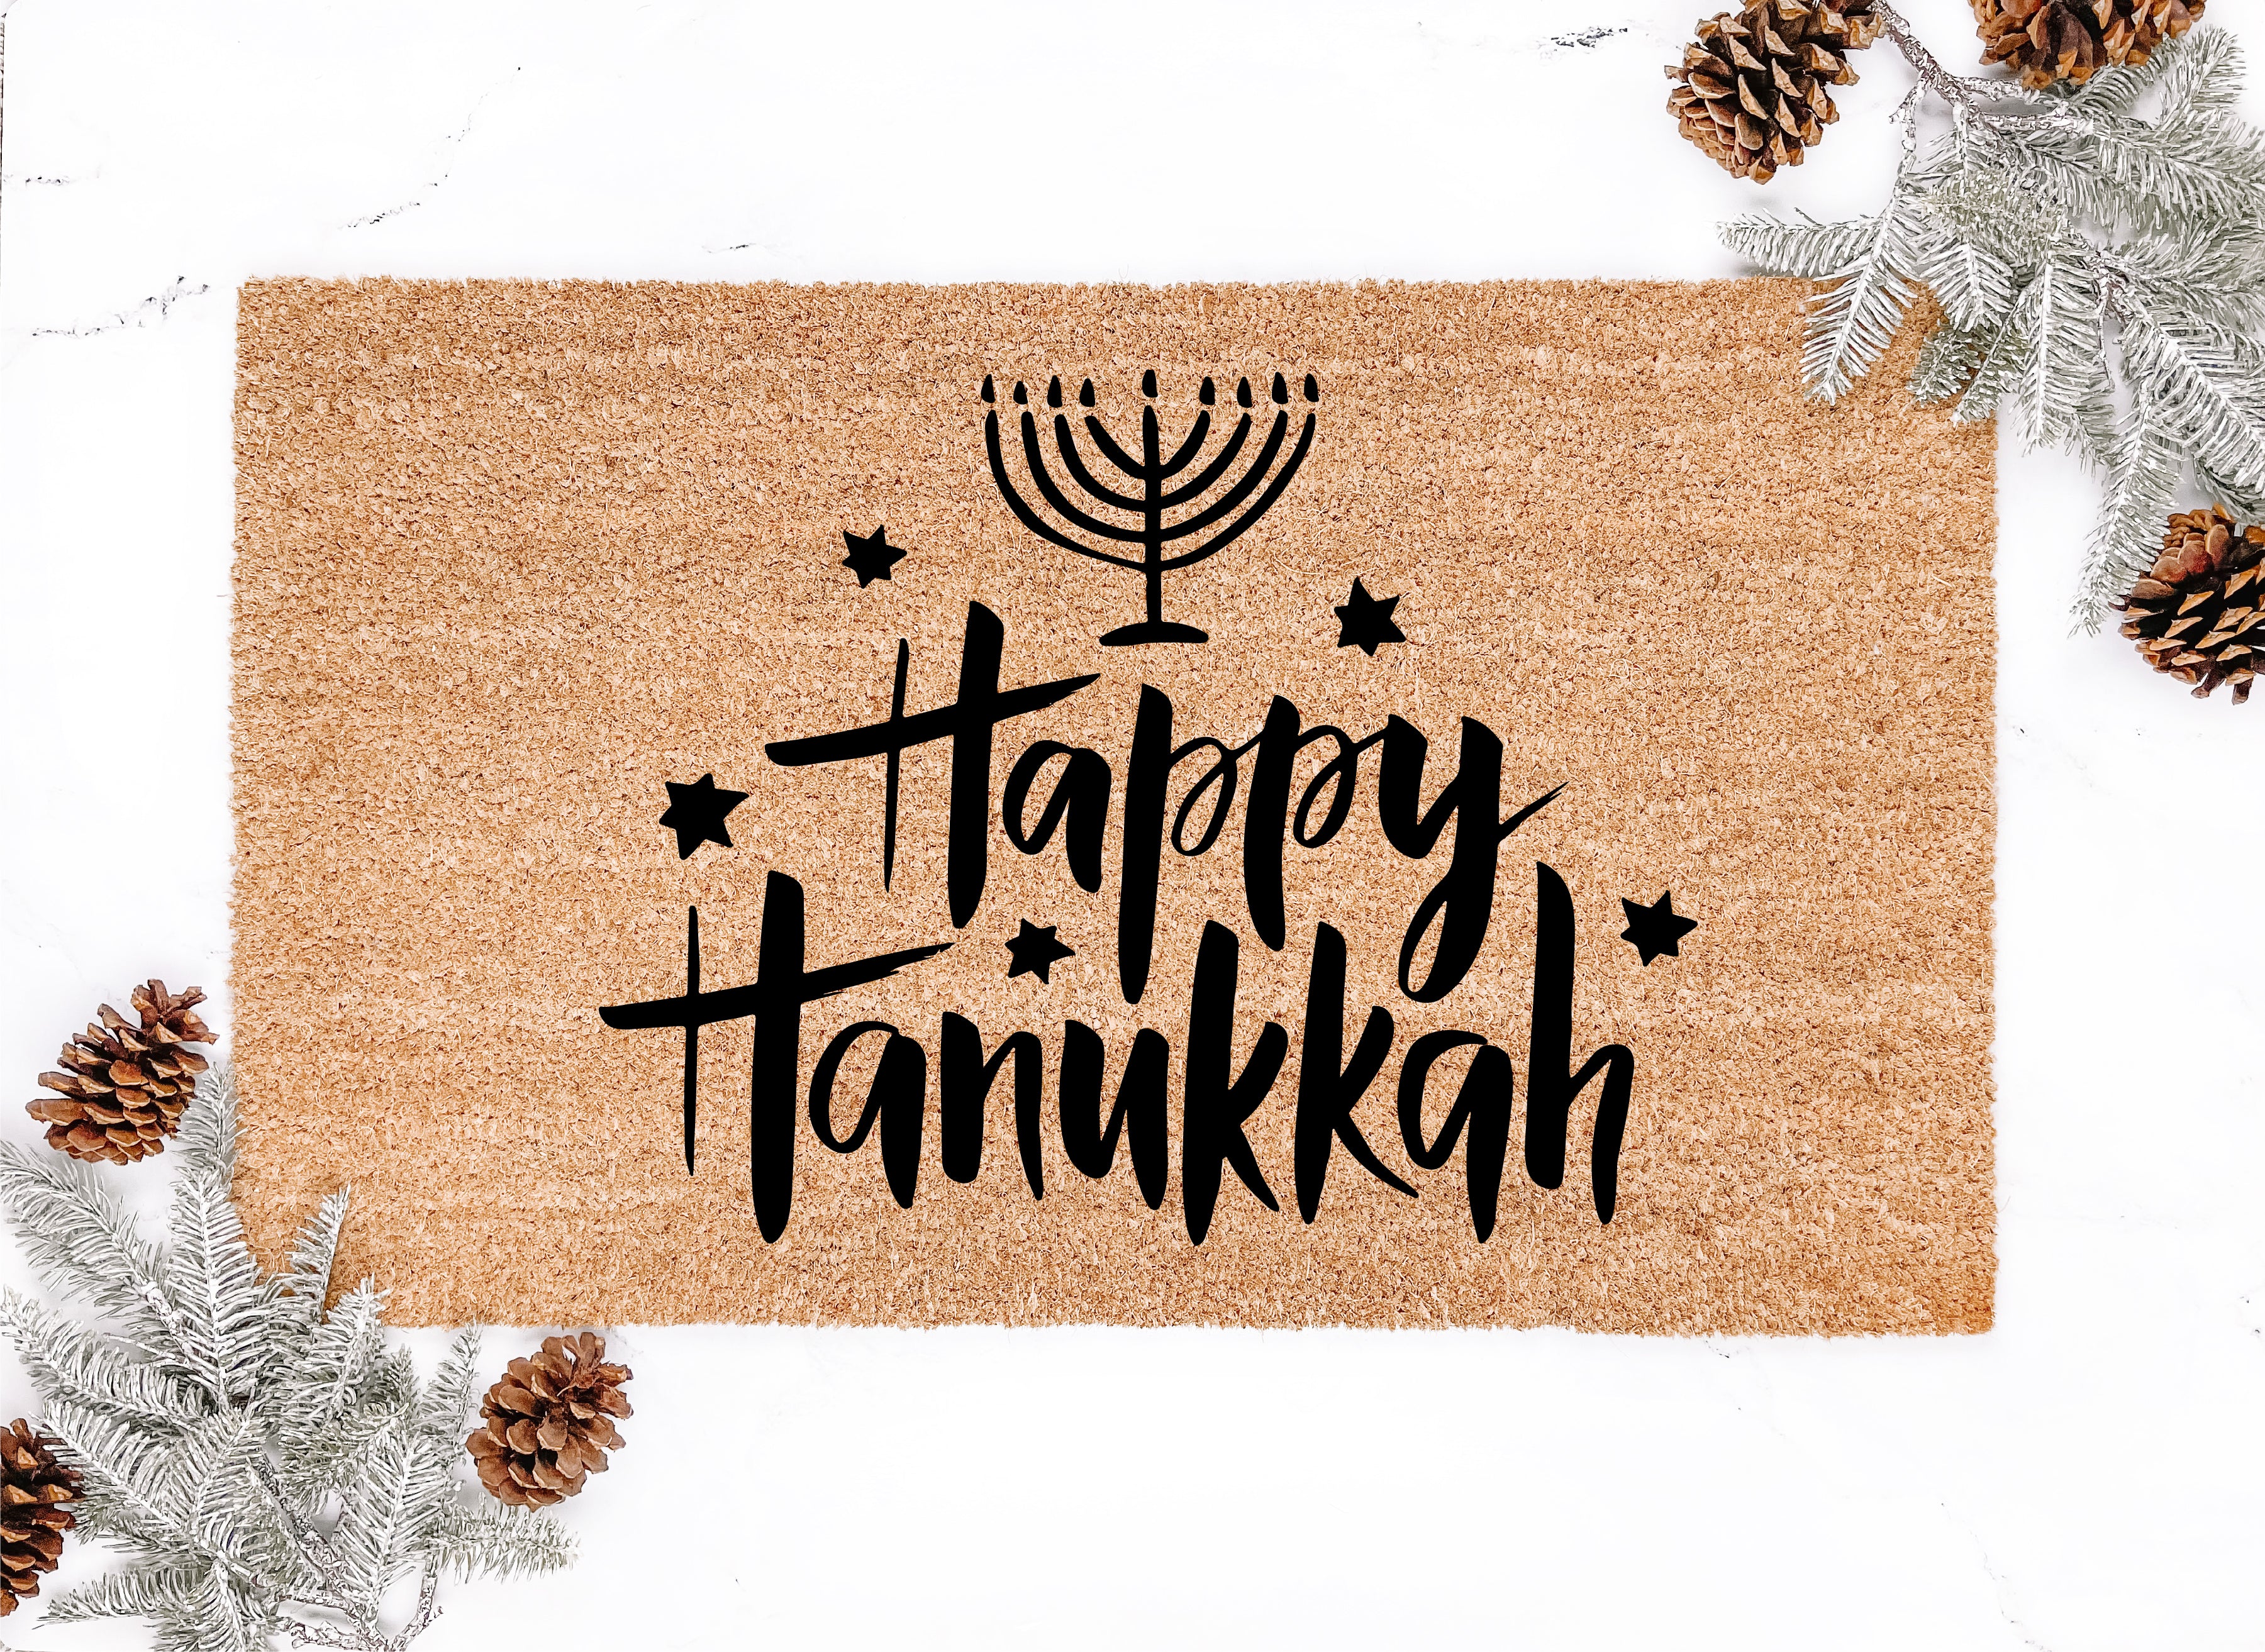 Happy Hanukkah Doormat